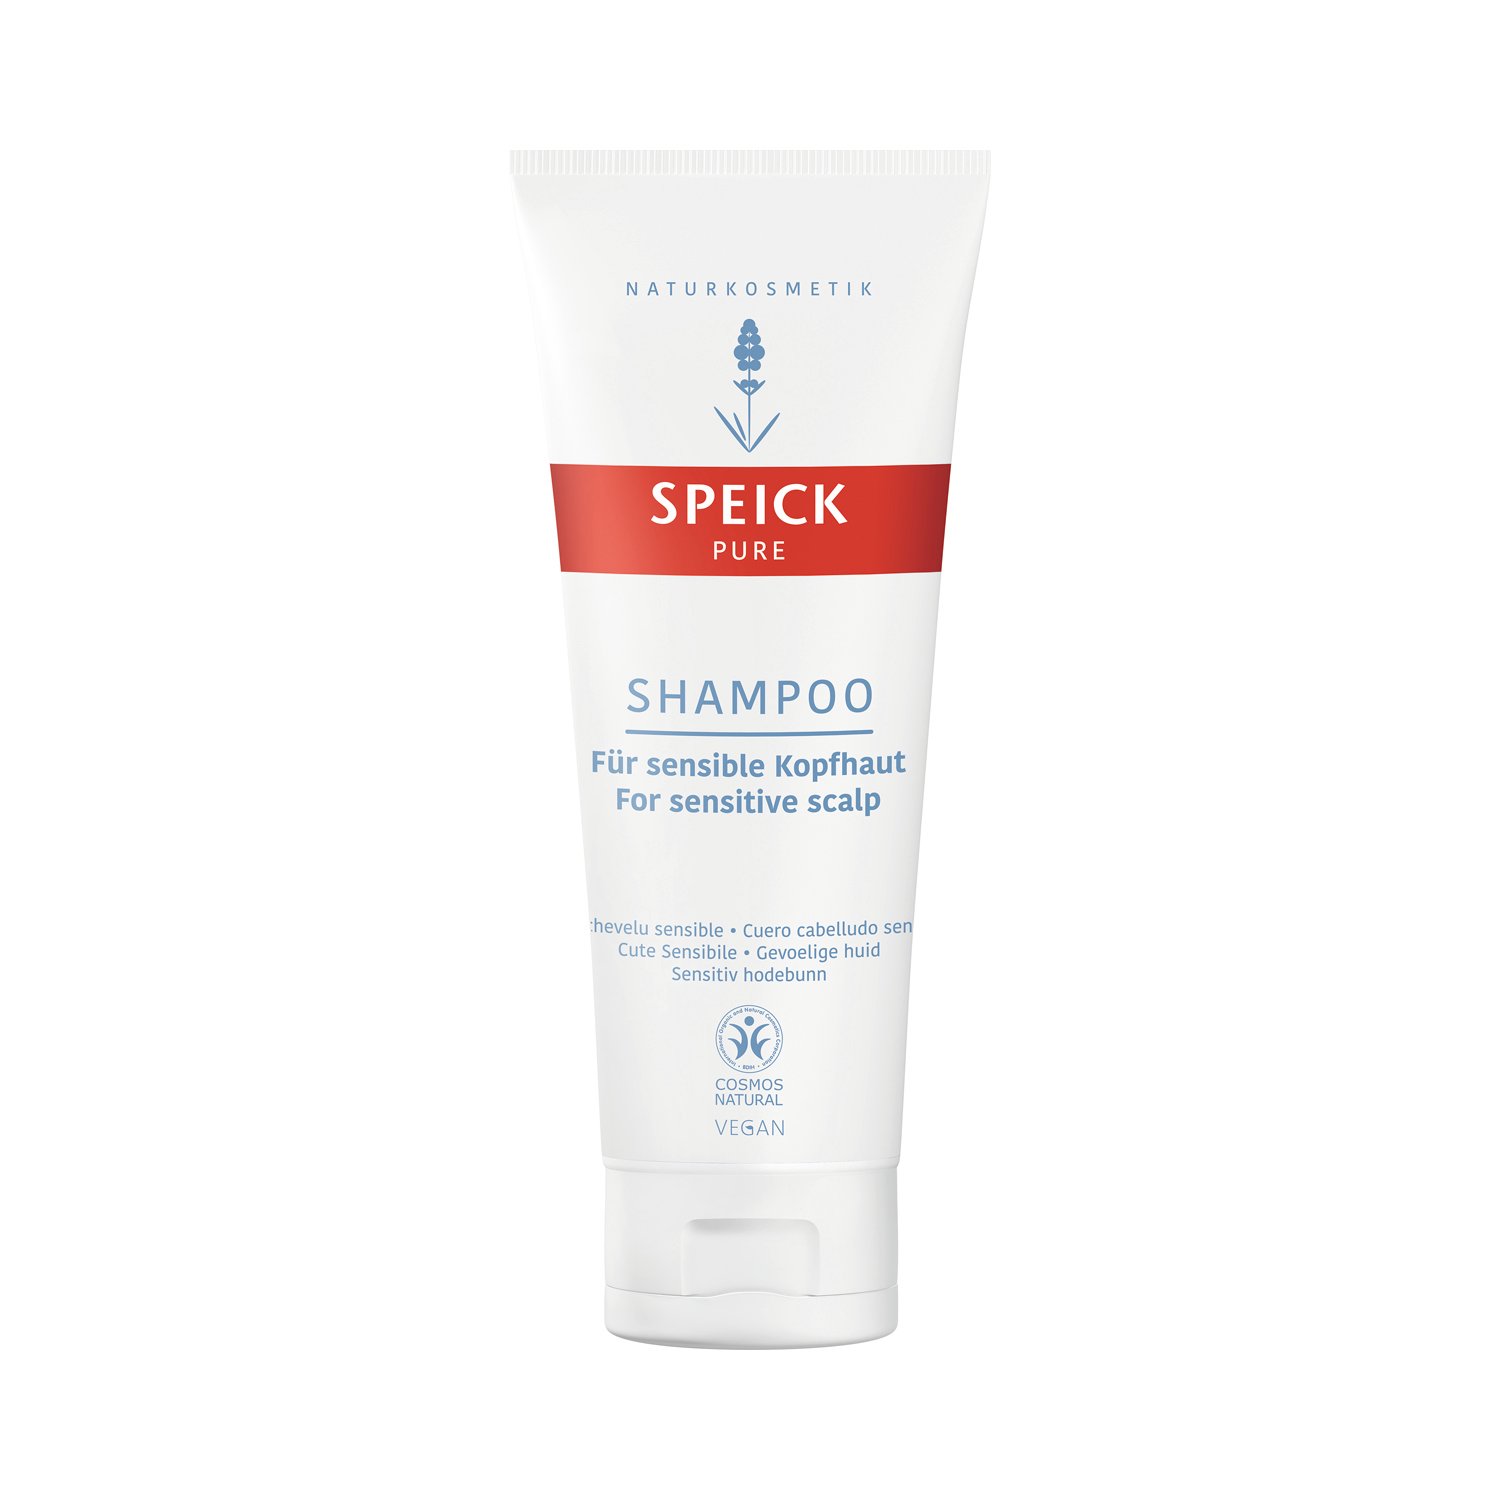 Speick Pure - Shampoo - für sensible Kopfhaut